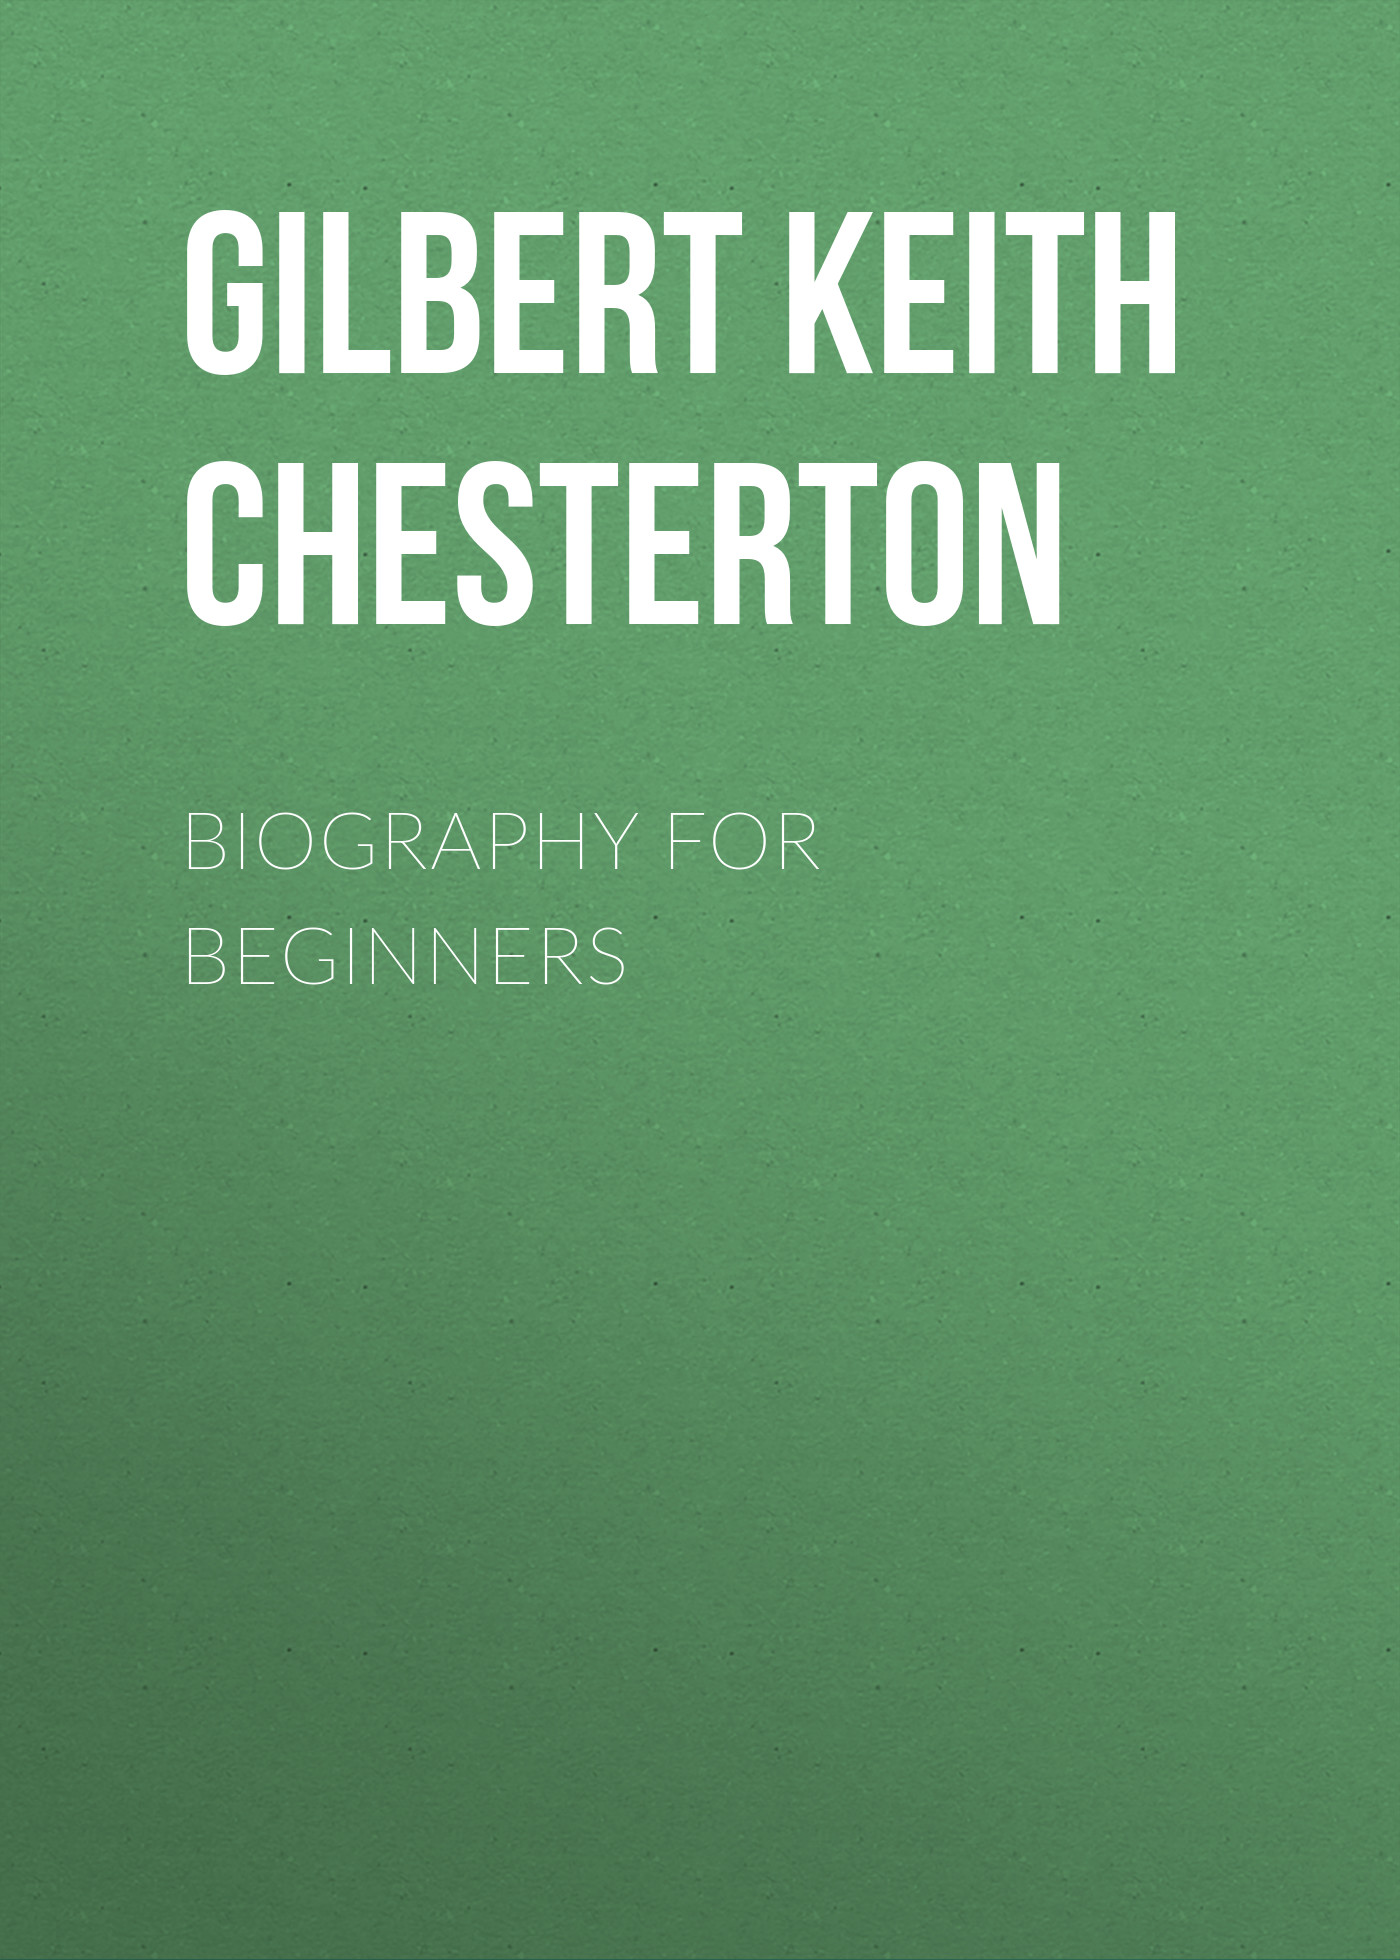 Книга Biography for Beginners из серии , созданная Gilbert Chesterton, может относится к жанру Зарубежная старинная литература, Зарубежная классика. Стоимость электронной книги Biography for Beginners с идентификатором 25020531 составляет 0 руб.